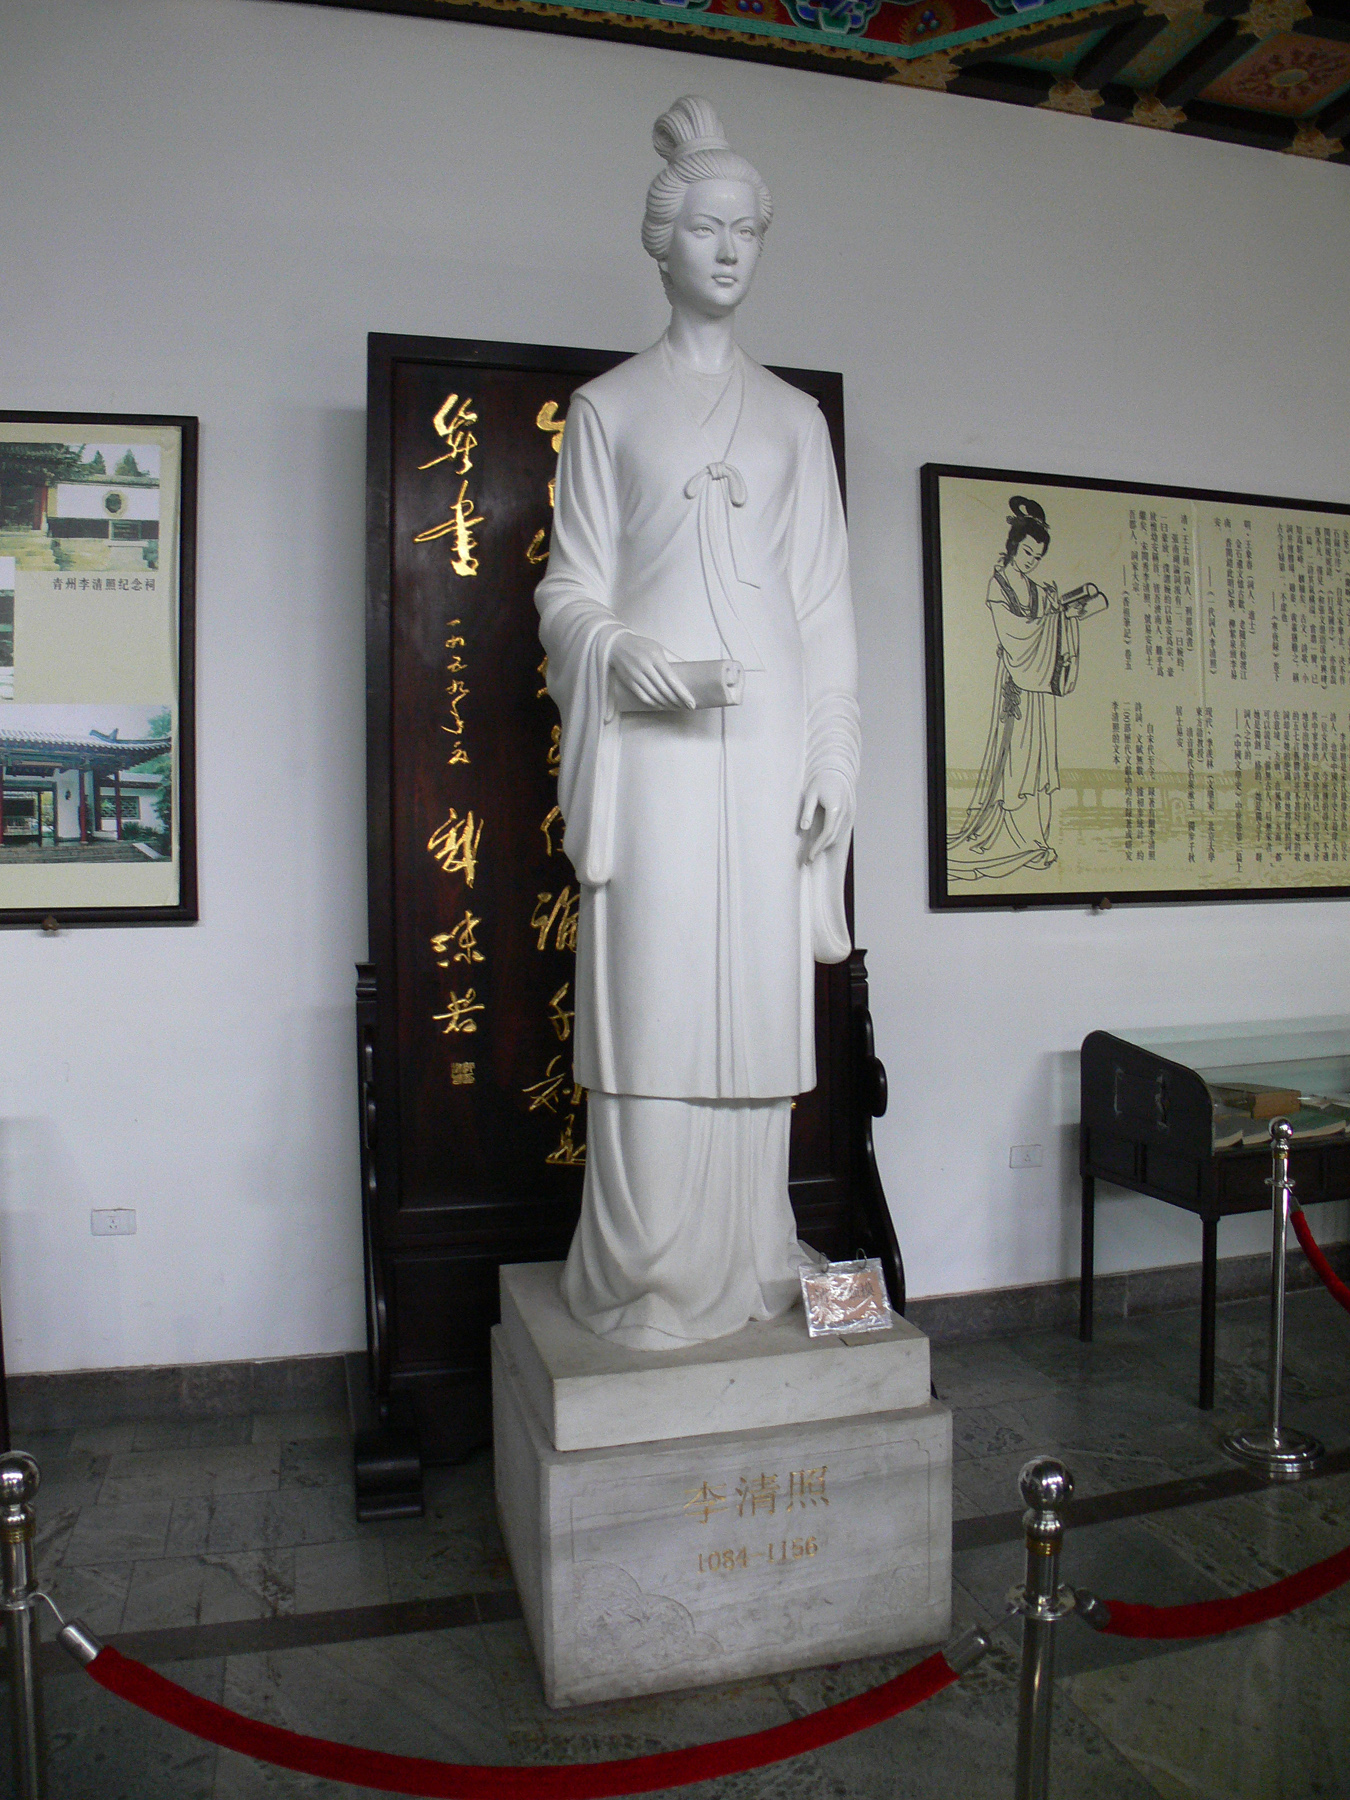 Li Qingzhao (李清照)